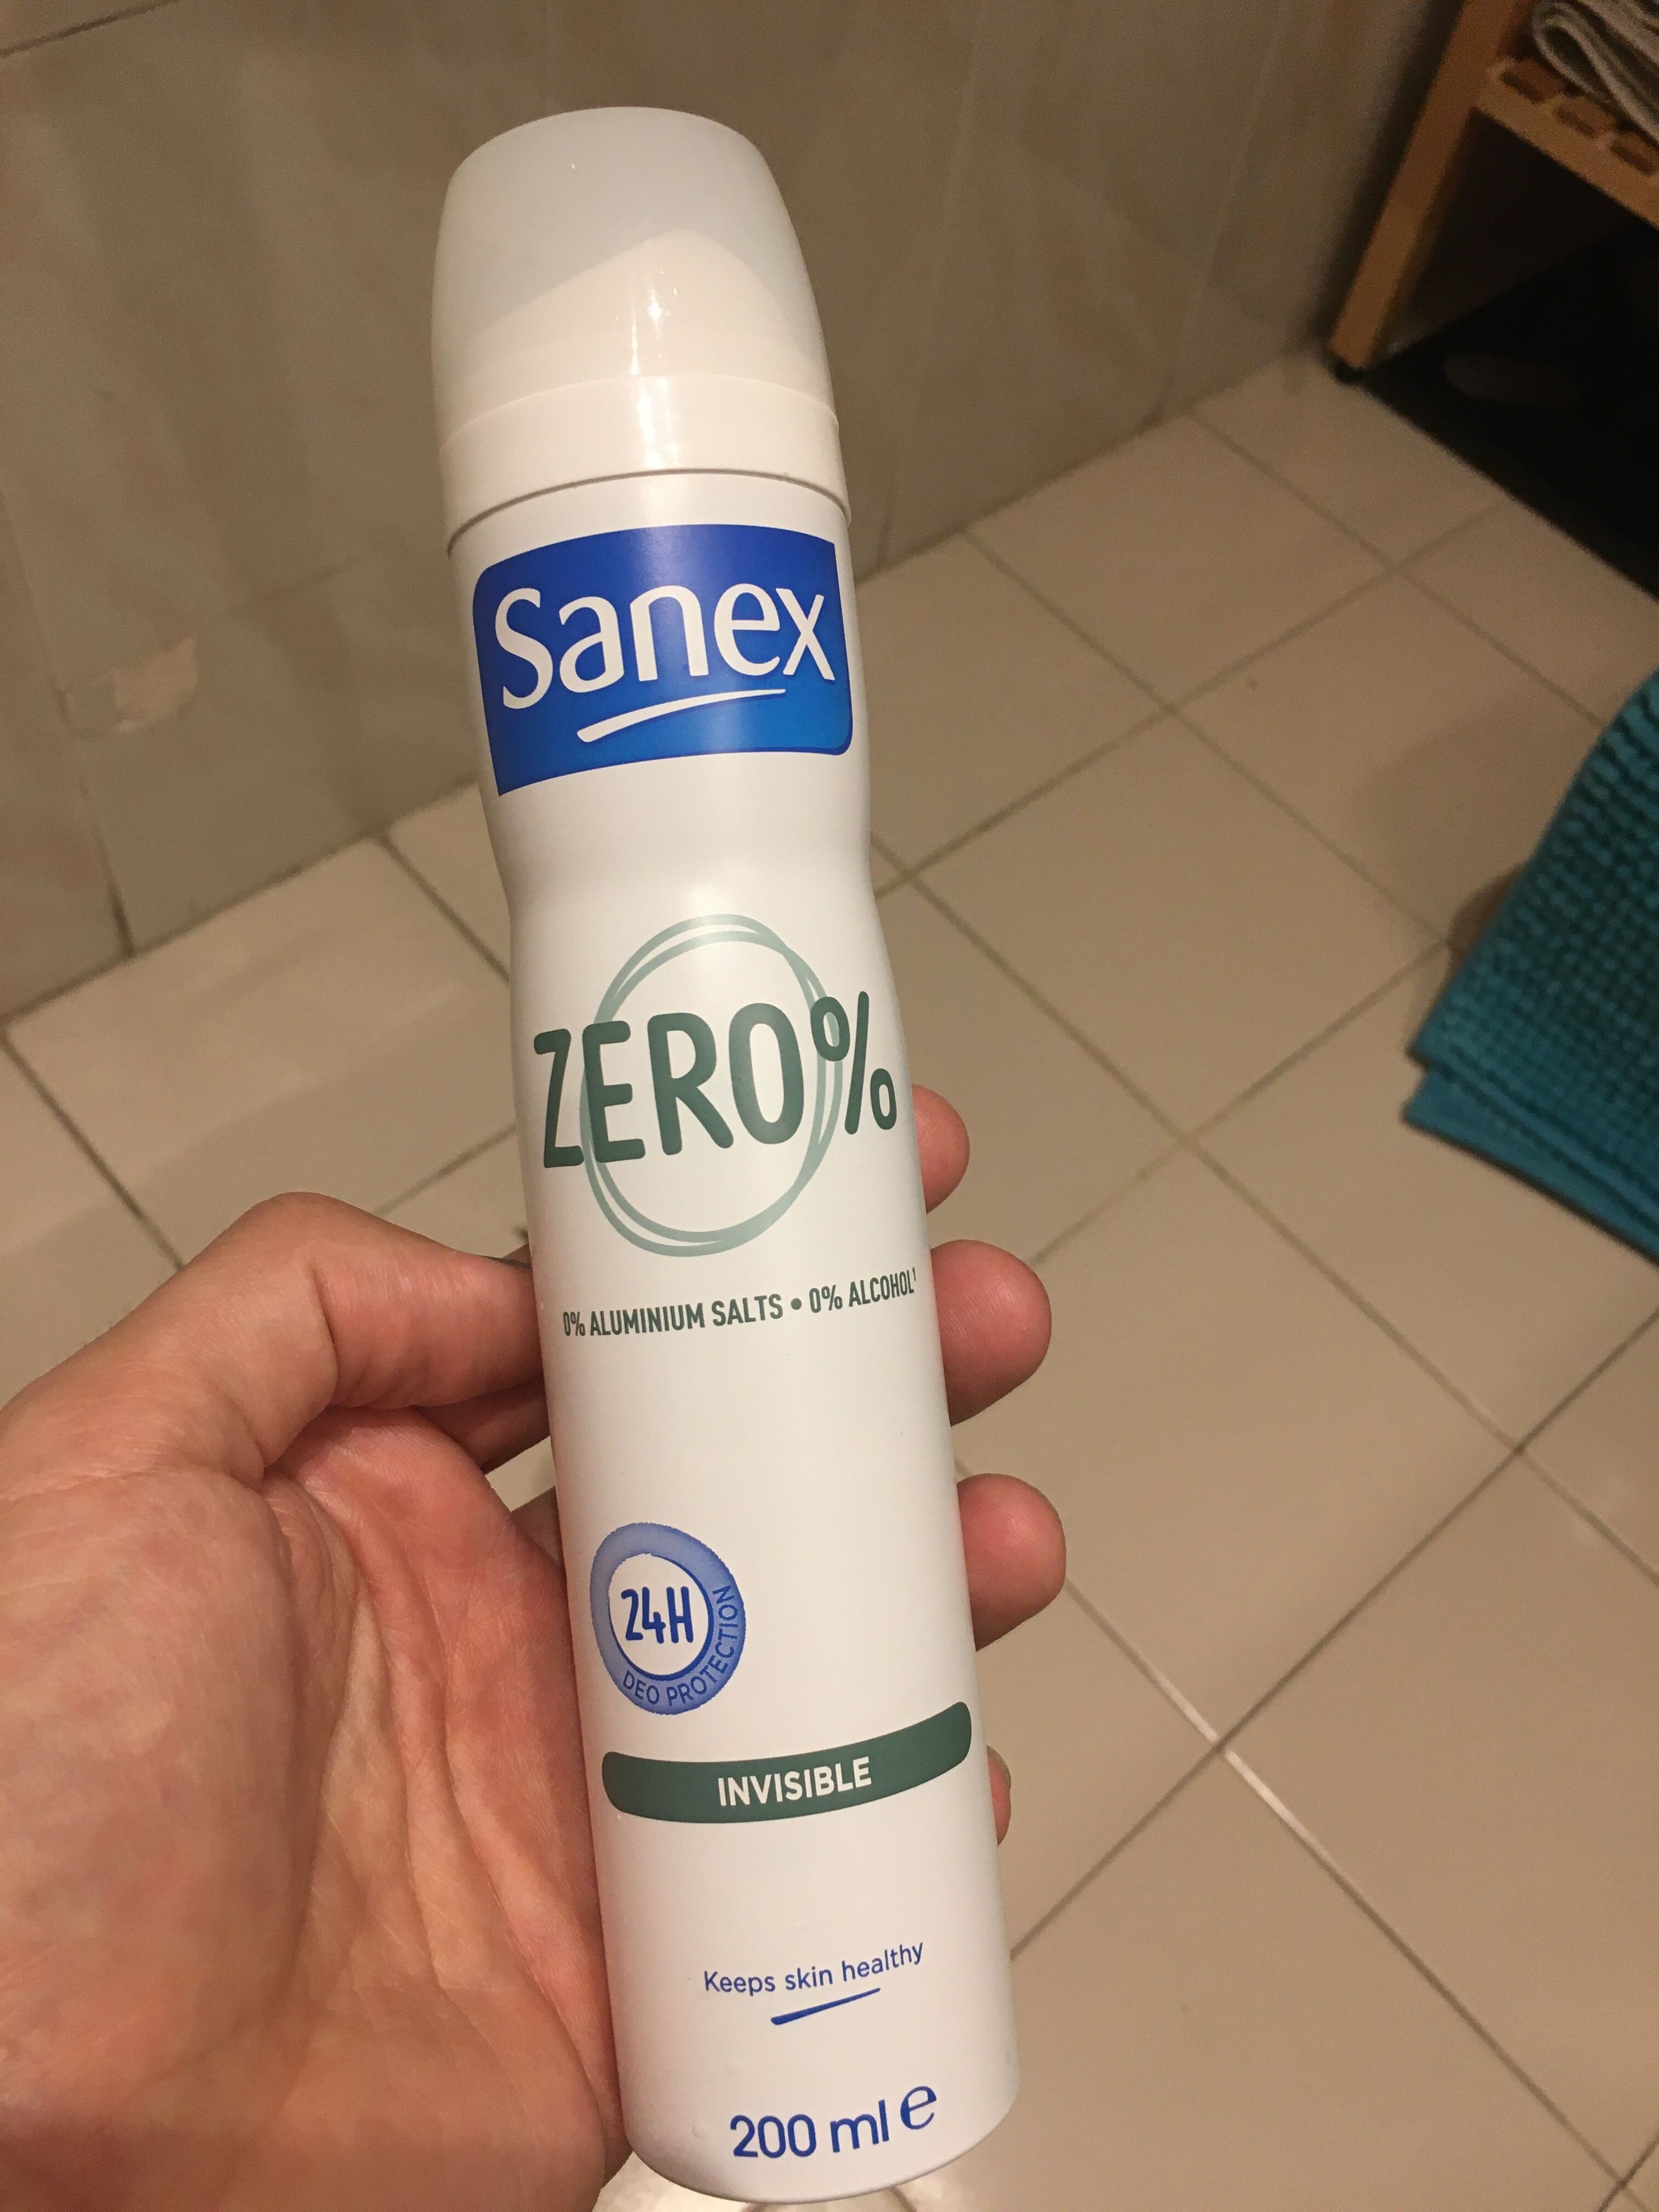 Sanex zero% - Producto - en